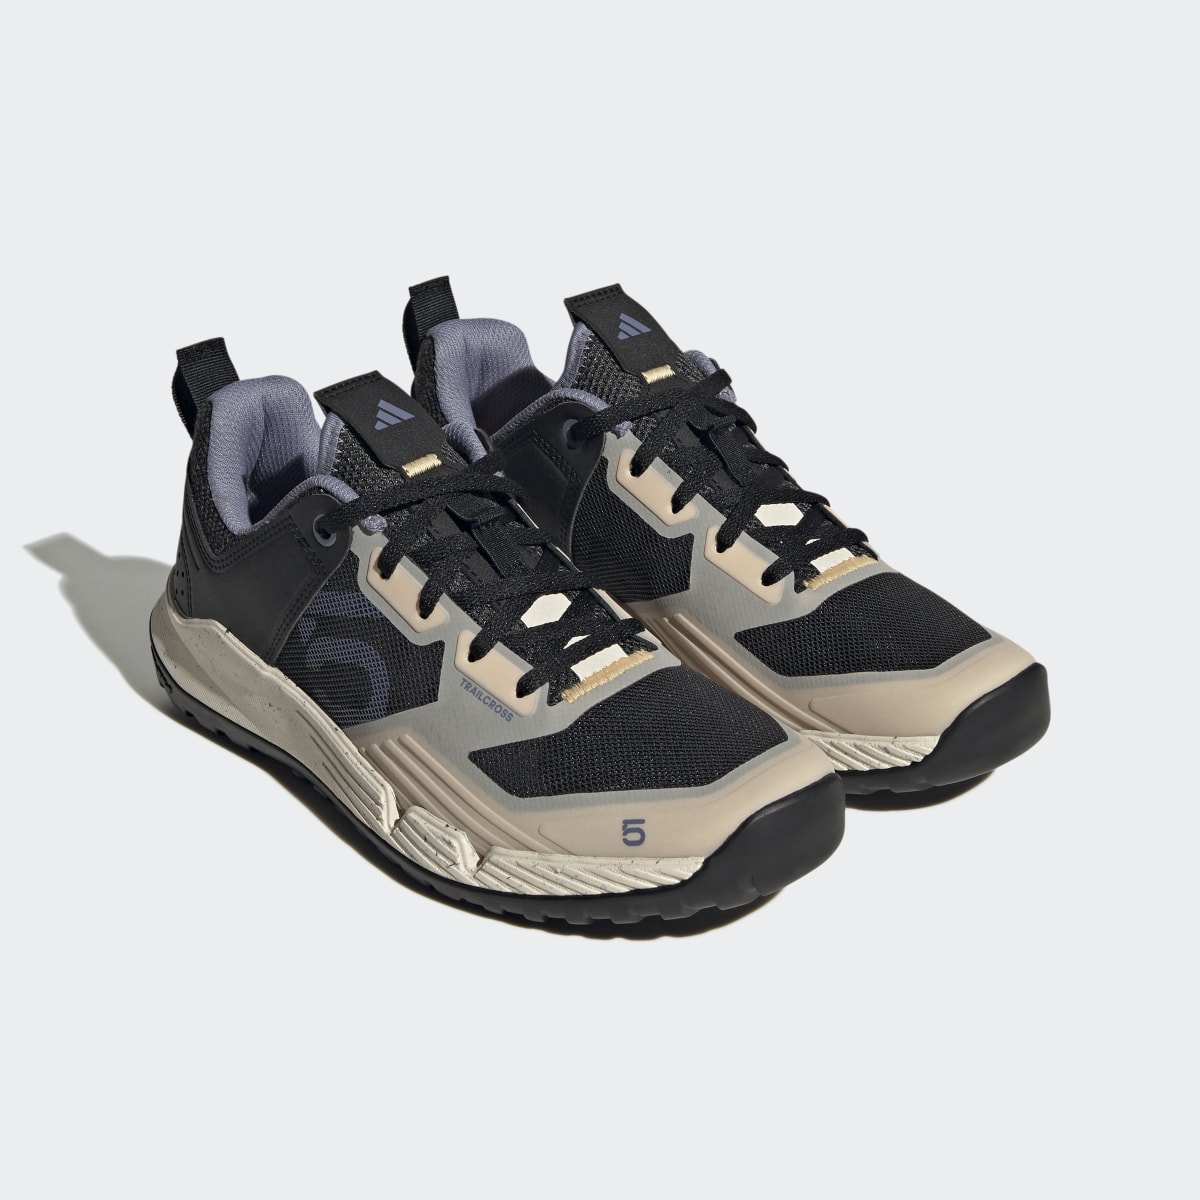 Adidas Five Ten Trailcross XT Shoes. 5